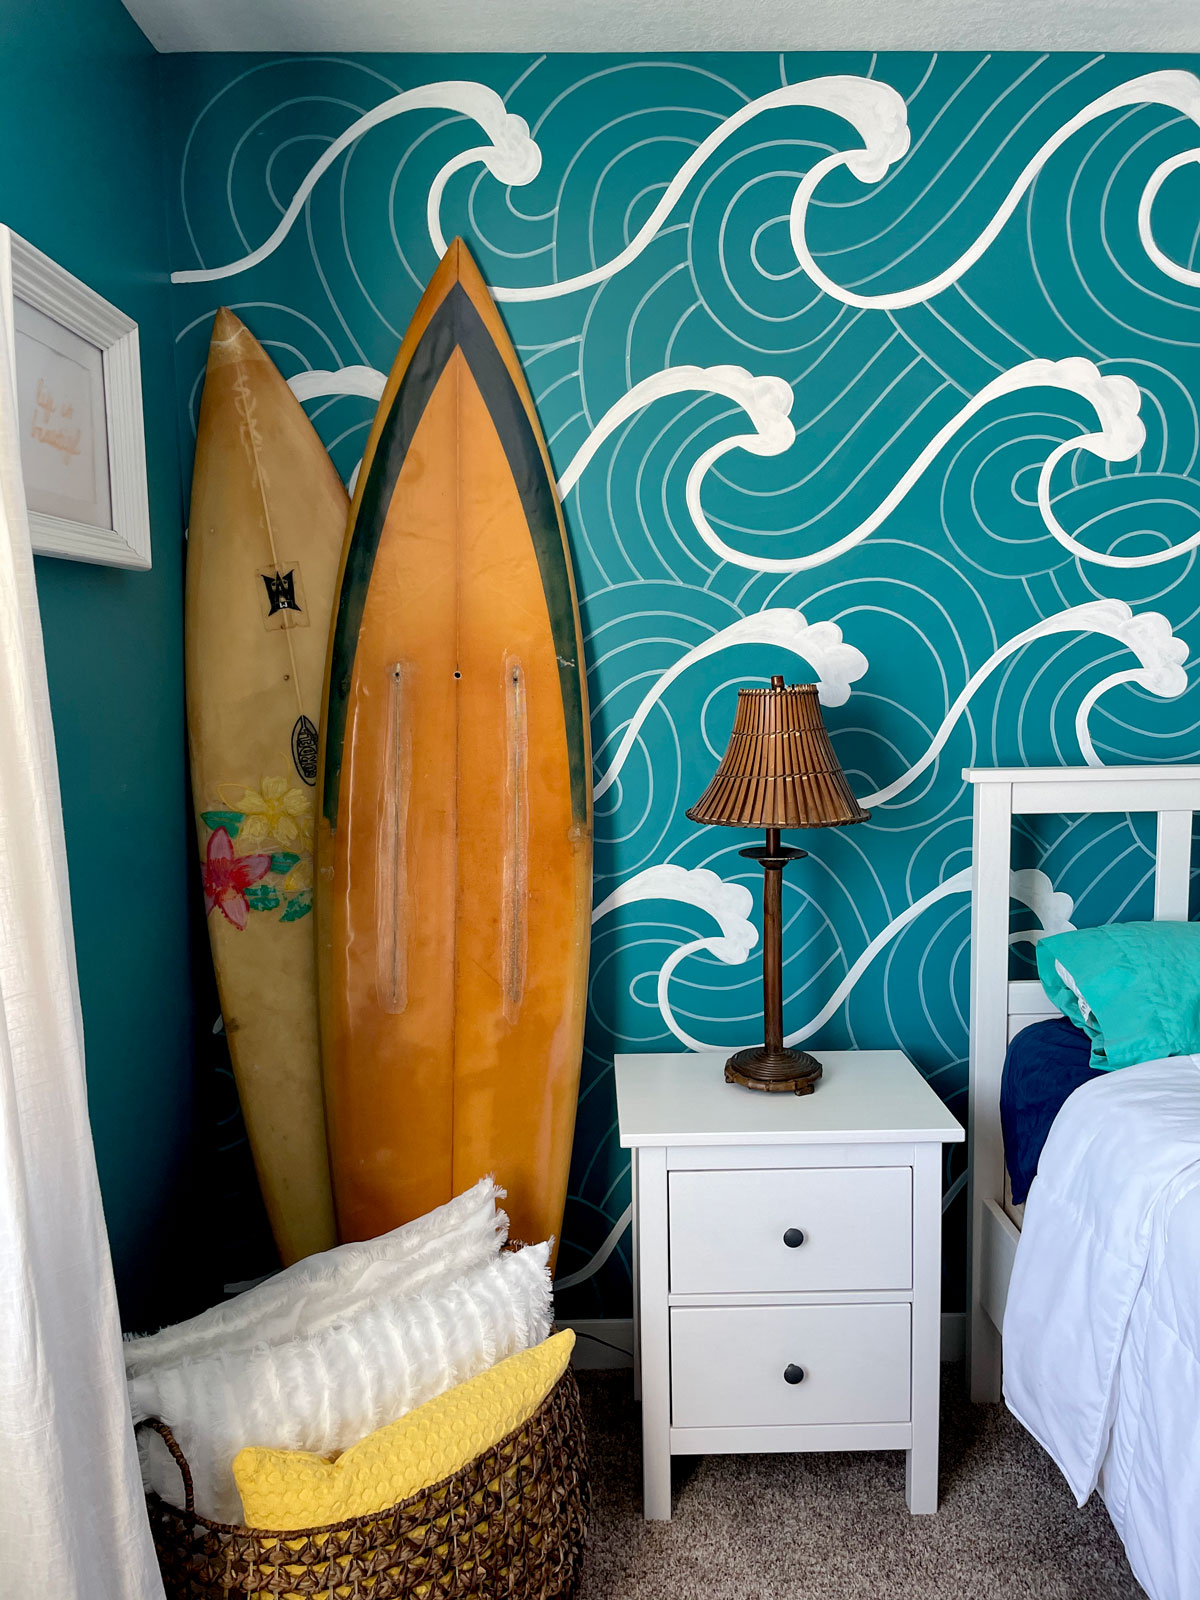 A beachy wave bedroom mural!